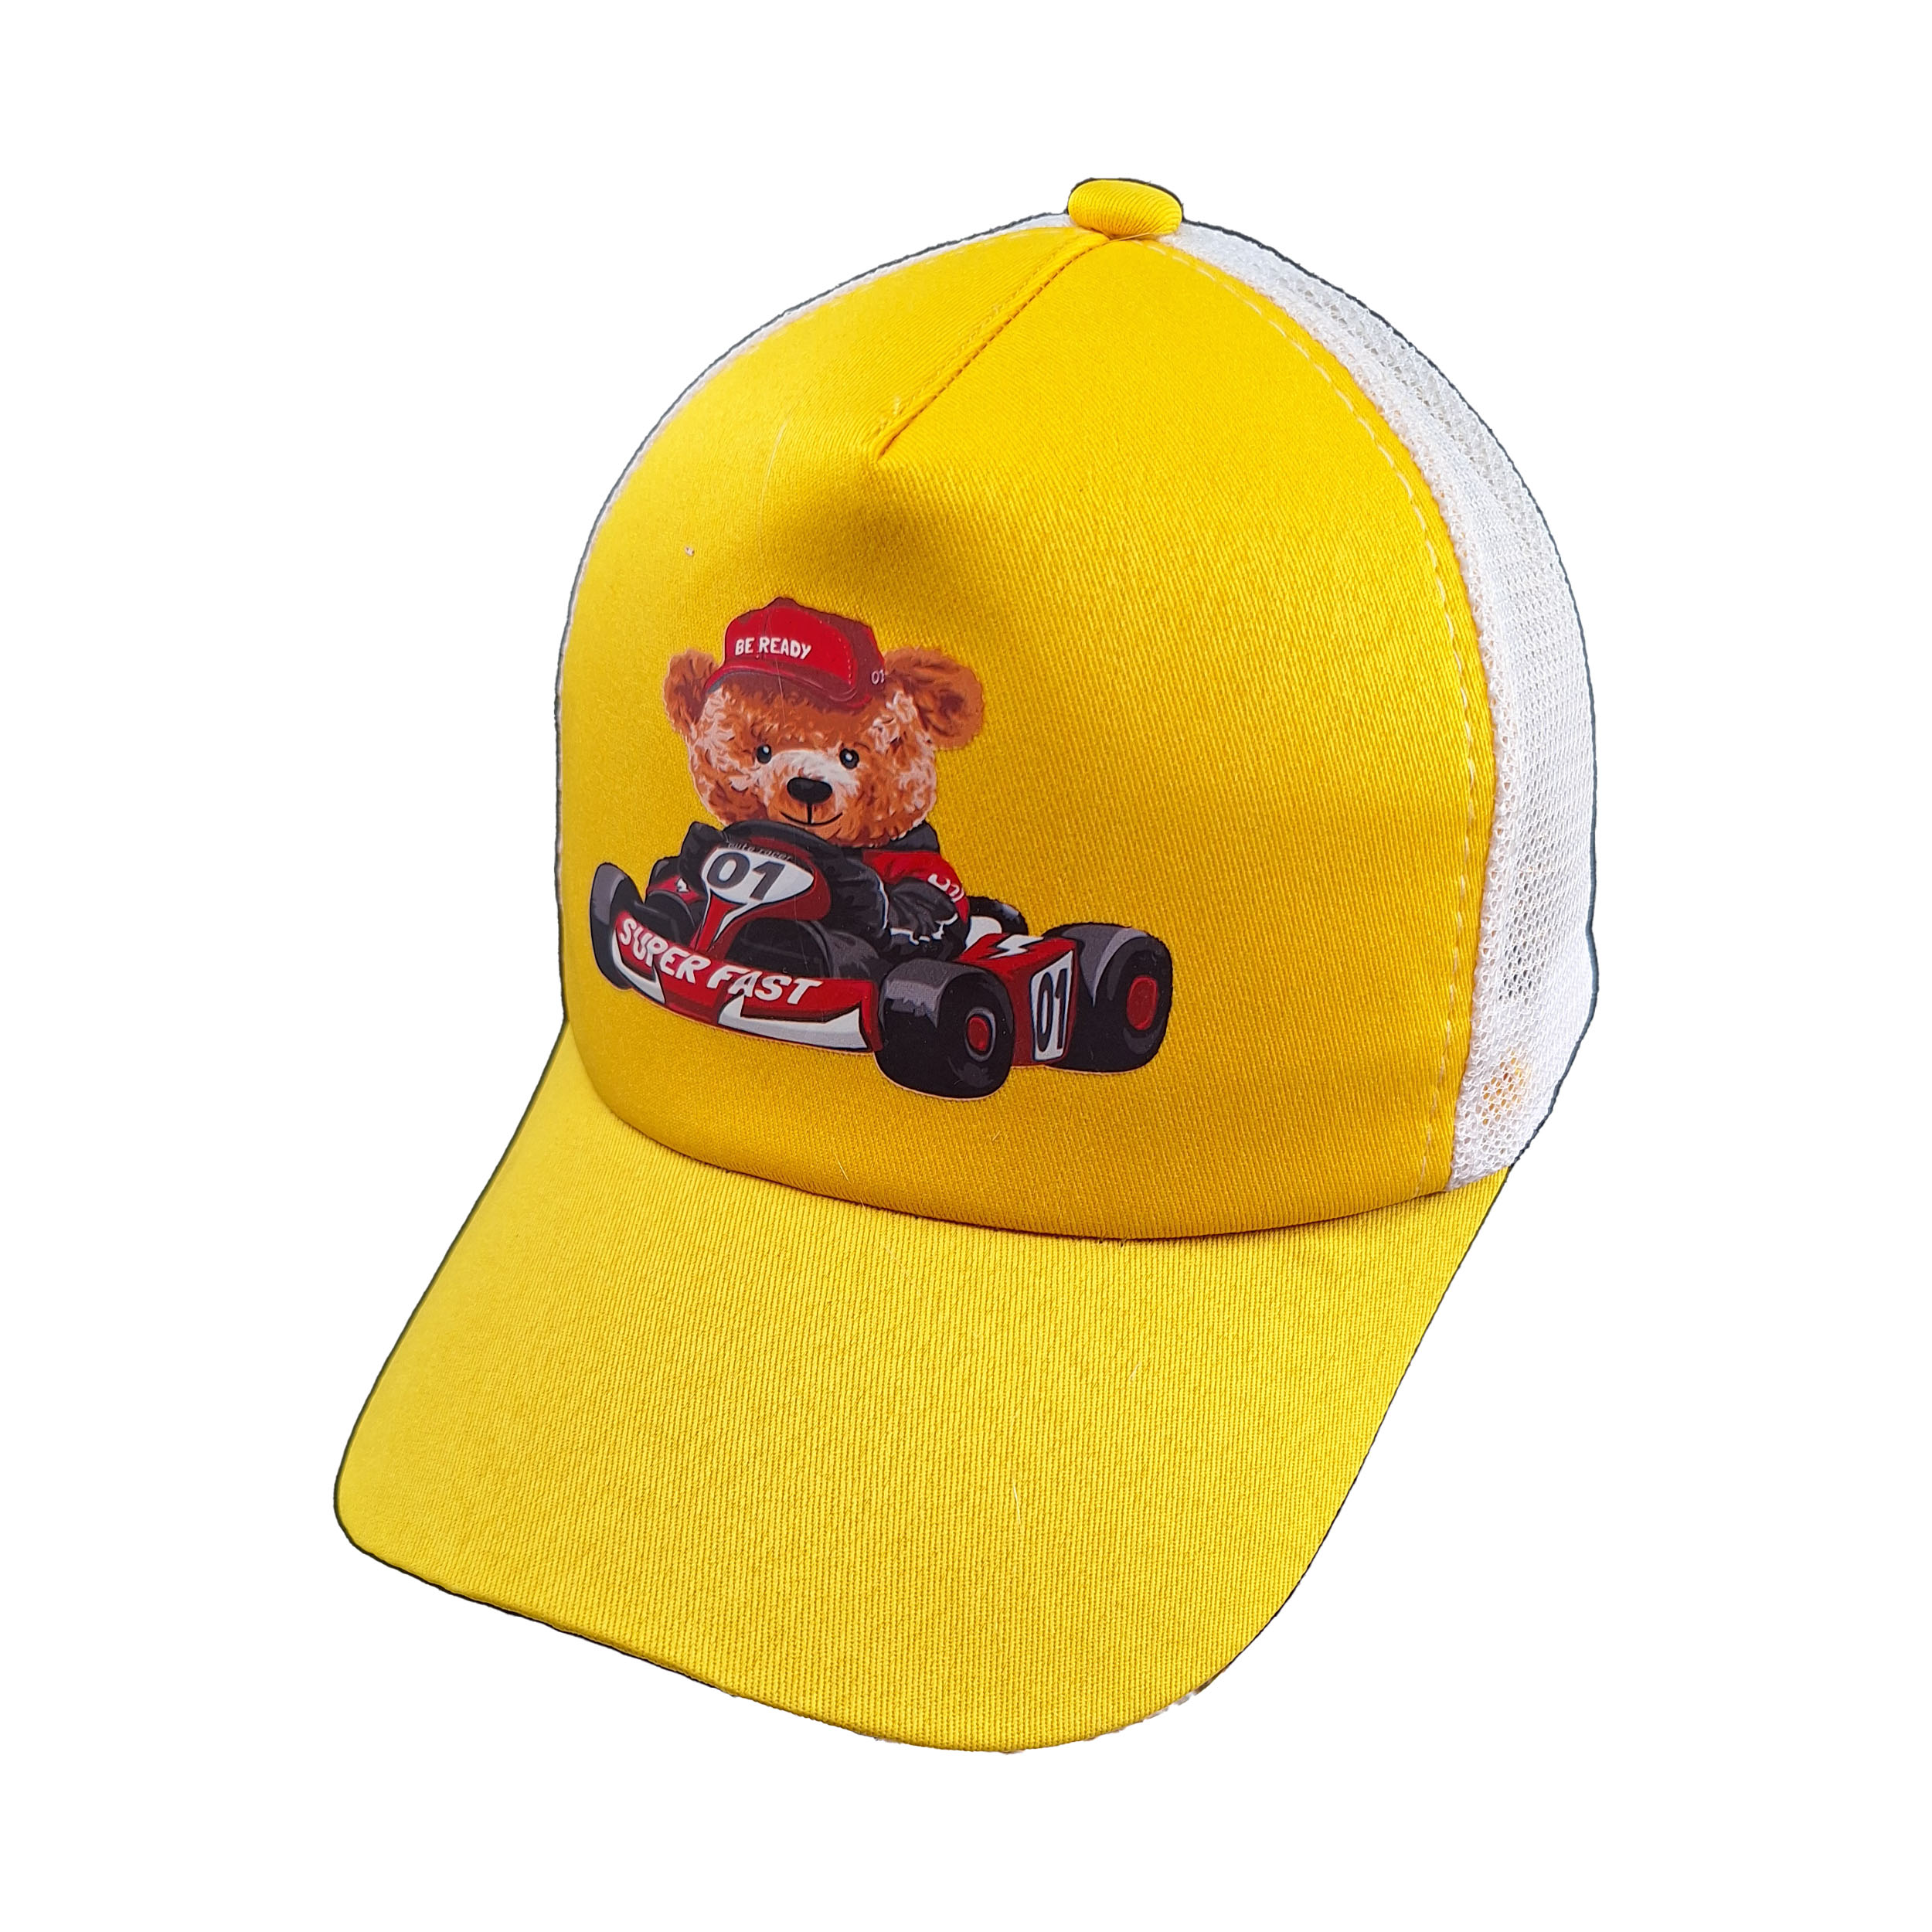 کلاه کپ بچگانه مدل SUPER FAST کد 1194 -  - 3